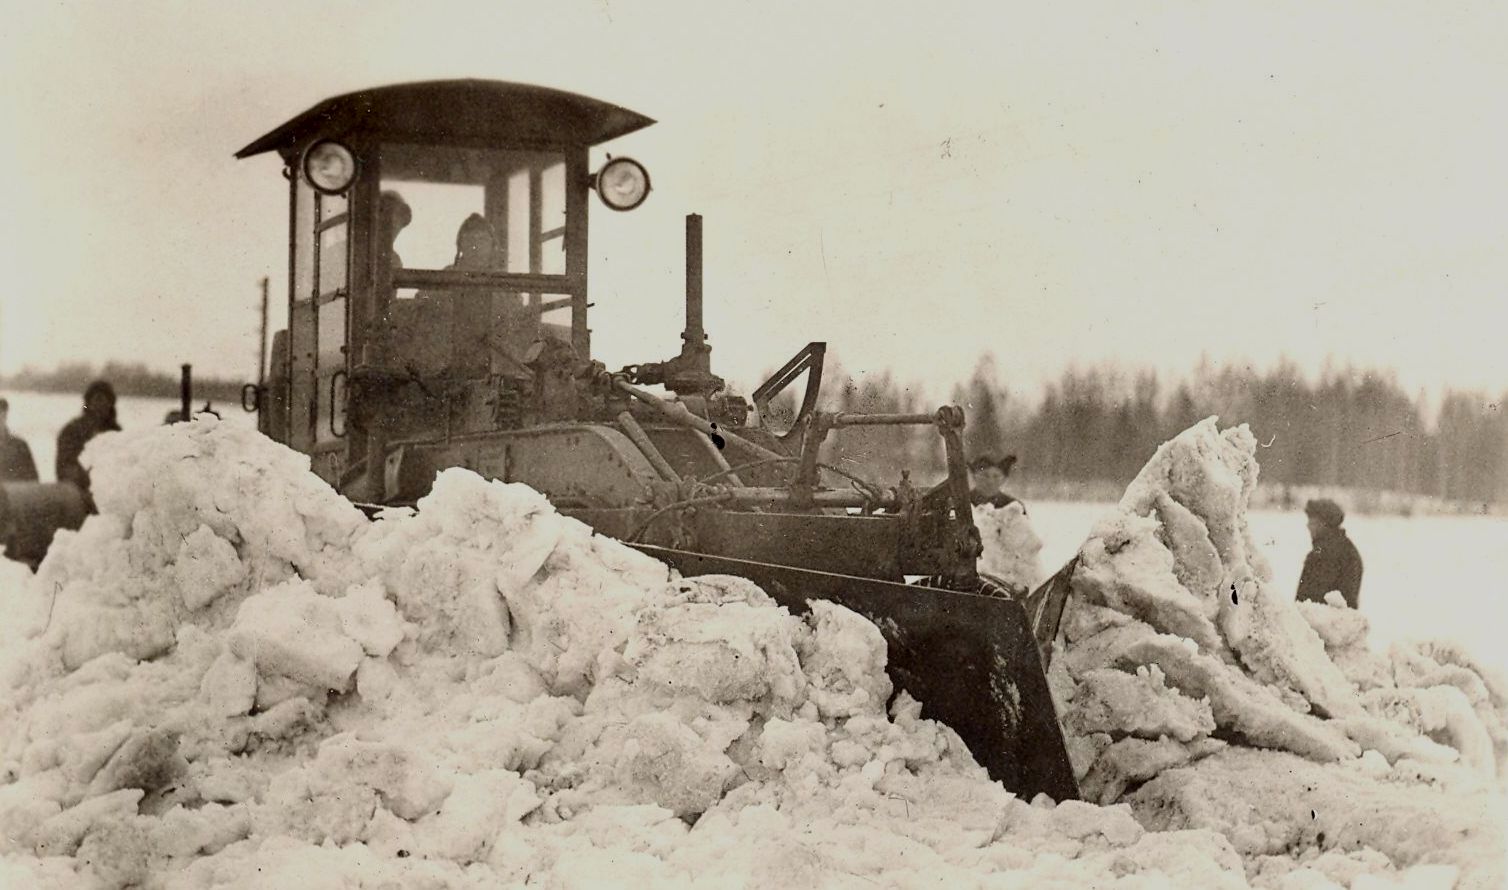 1940. a. töötas Eesti teedevõrgu korrastamisel 134 teehöövlit. Suur enamik neist olid ehitatud Eestis, mis pakkus tööd ja leiba kohalikele inimestele. Lisaks hööveldamisele kasutati neid masinaid ka talvisel ajal lumetõrjel. Masinapark töötas kodumaisel mootorikütusel – põlevkivibensiinil.